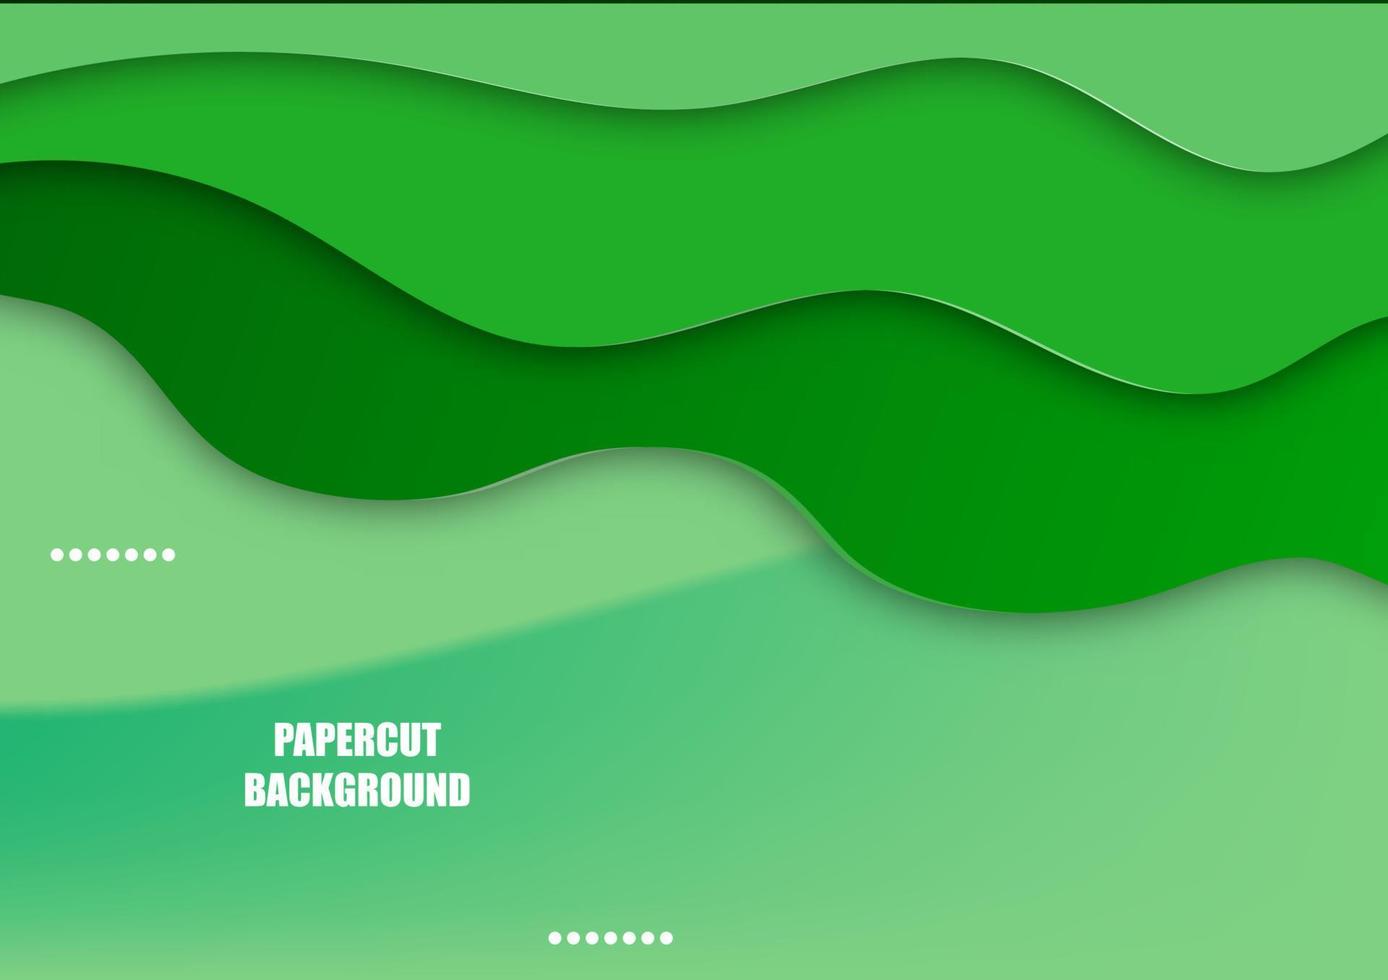 sfondo astratto tono di colore verde stile grafico papercut per carta o carta illustrazione vettoriale